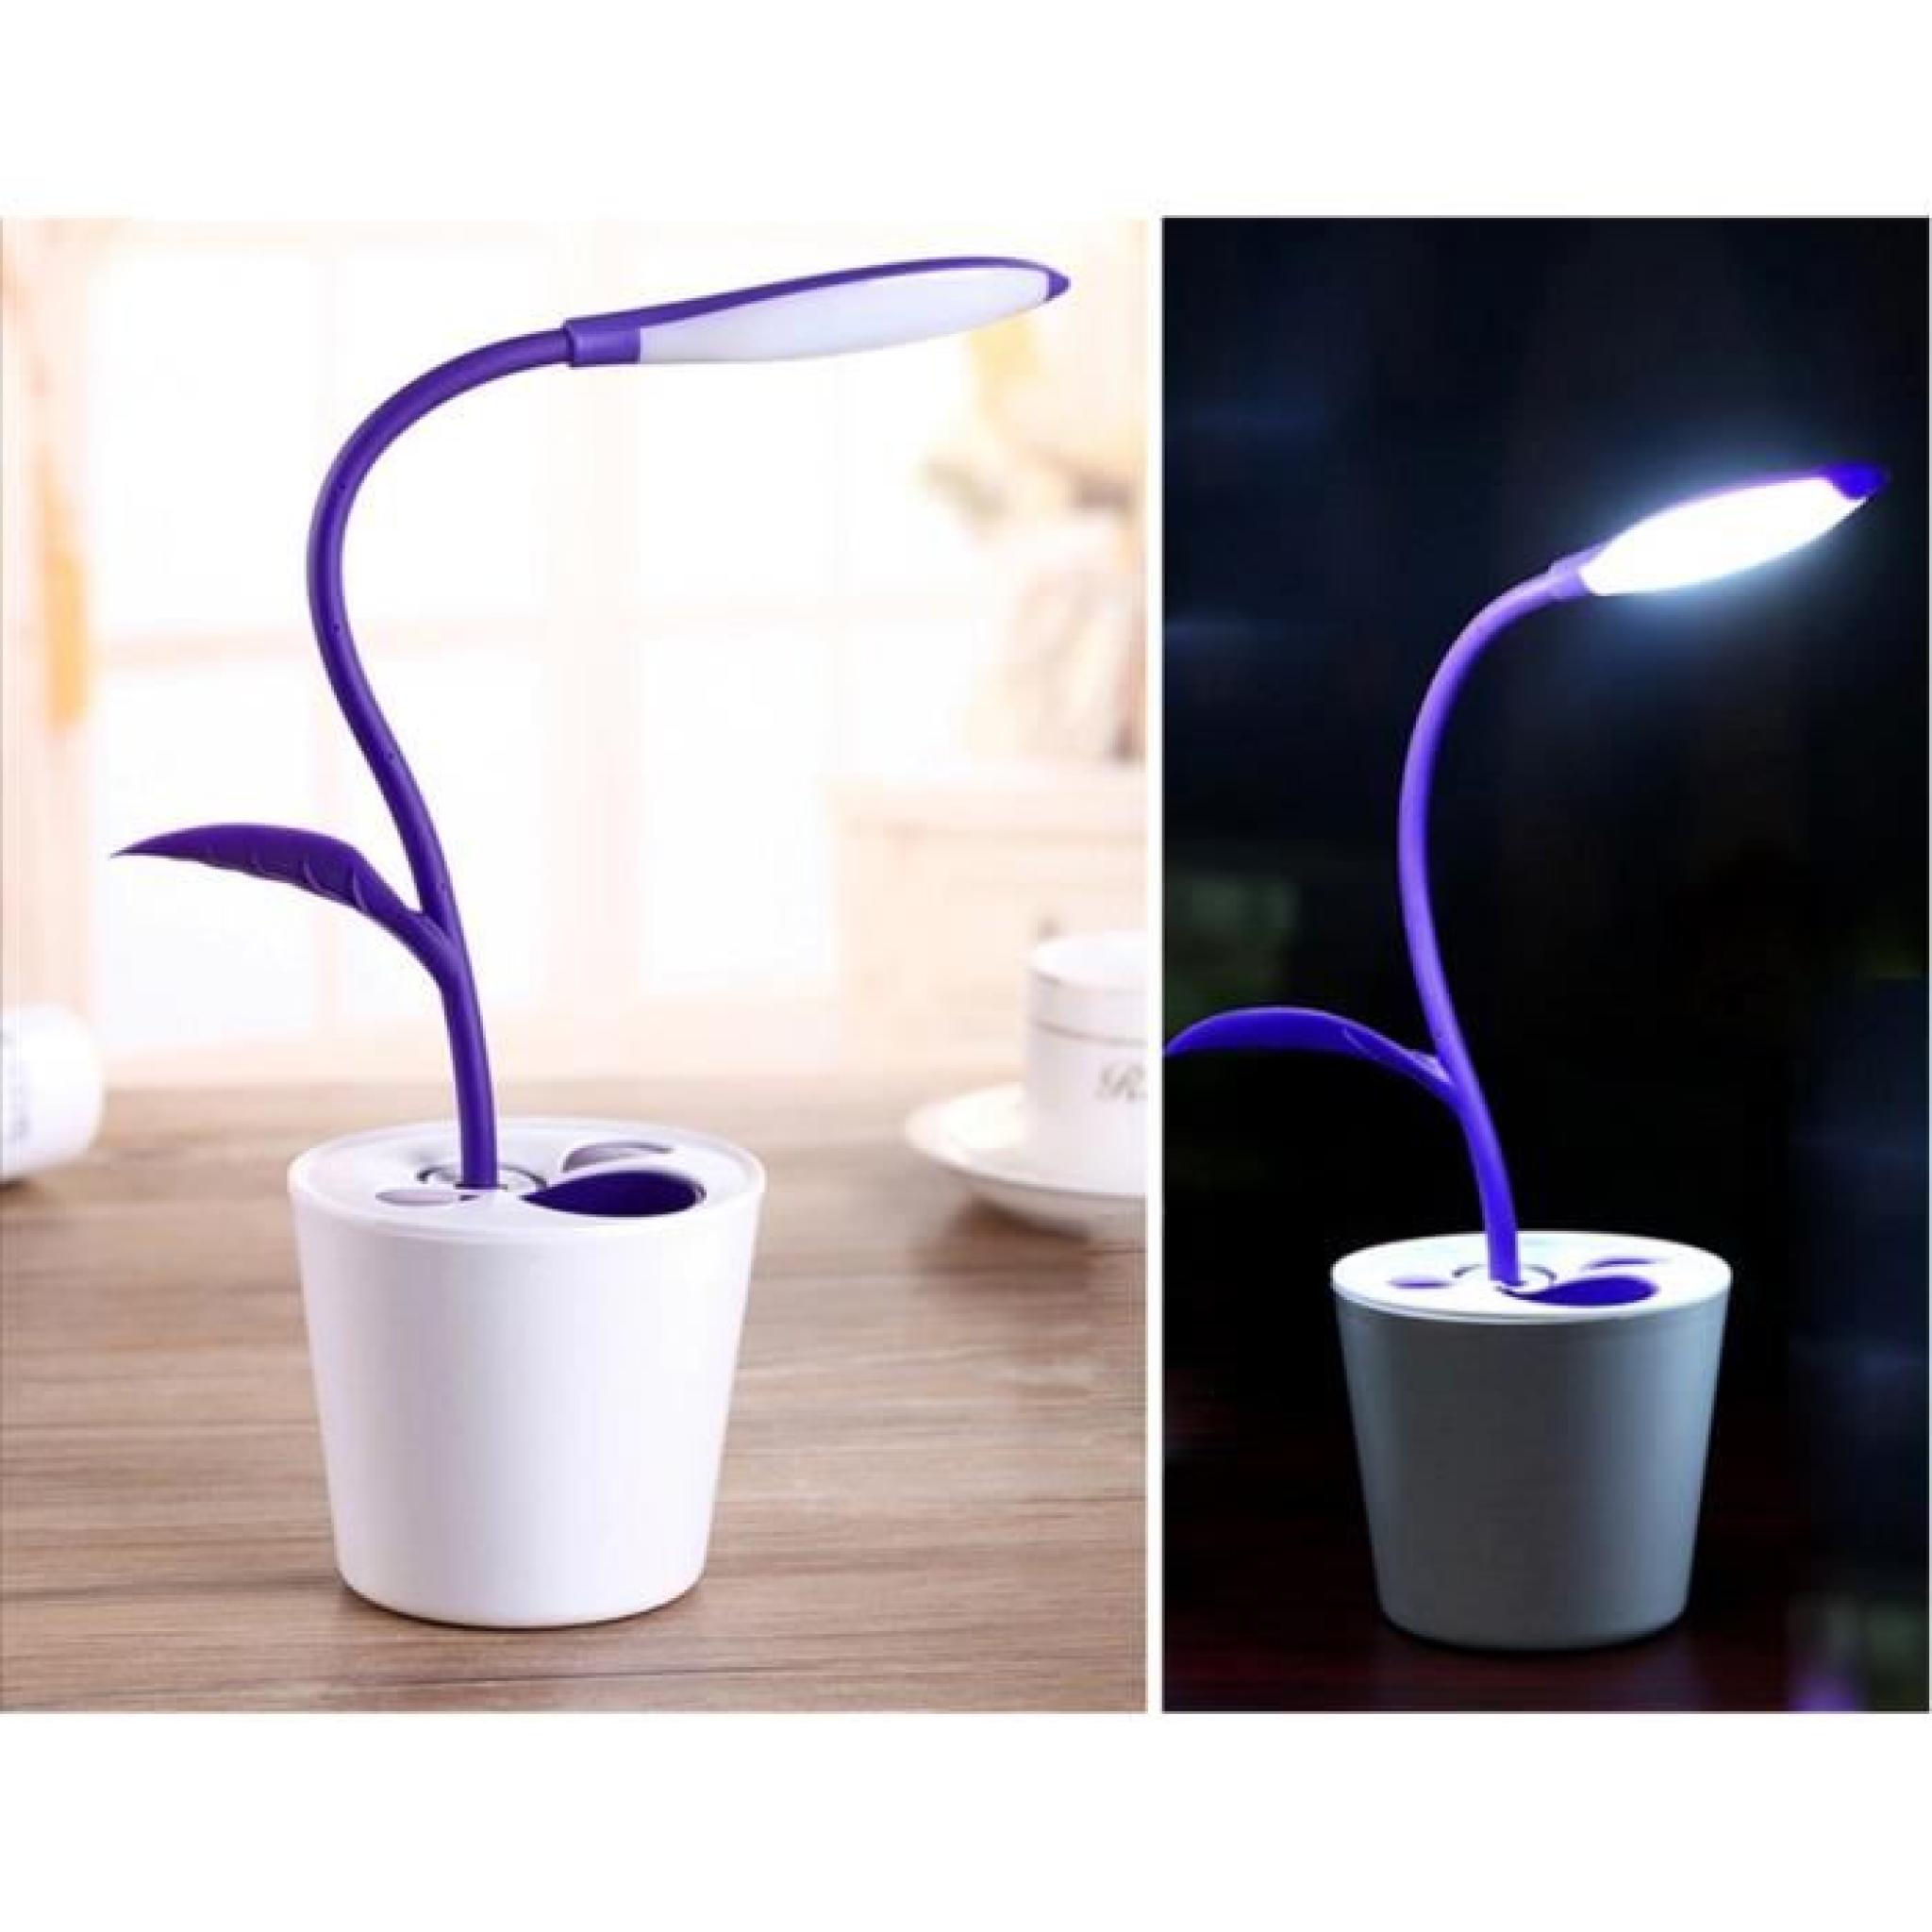 Lampe conteneur de stylo de conception de semis de pois de table des lunettes de protection rechargeable créative (violet )